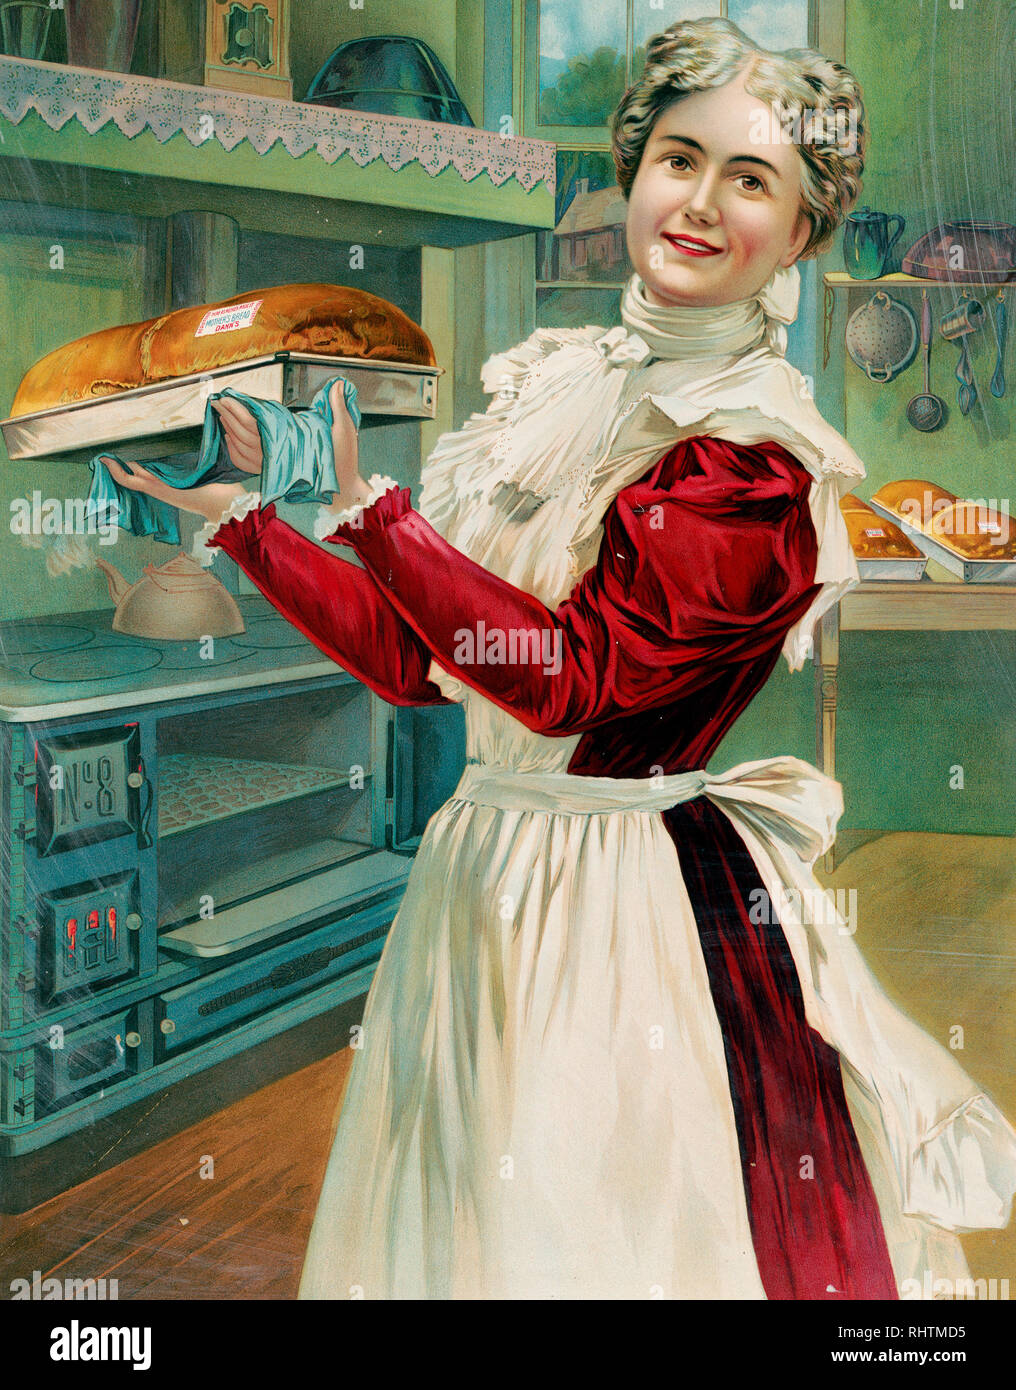 Imprimer montre une femme bien habillé portant un tablier, la cuisson du pain dans un home-style cuisine ; elle est debout, de trois-quarts, de face, tenant un pan du pain frais cuit dans une publicité pour la J.A. Dahn & Son Baking Company. Banque D'Images